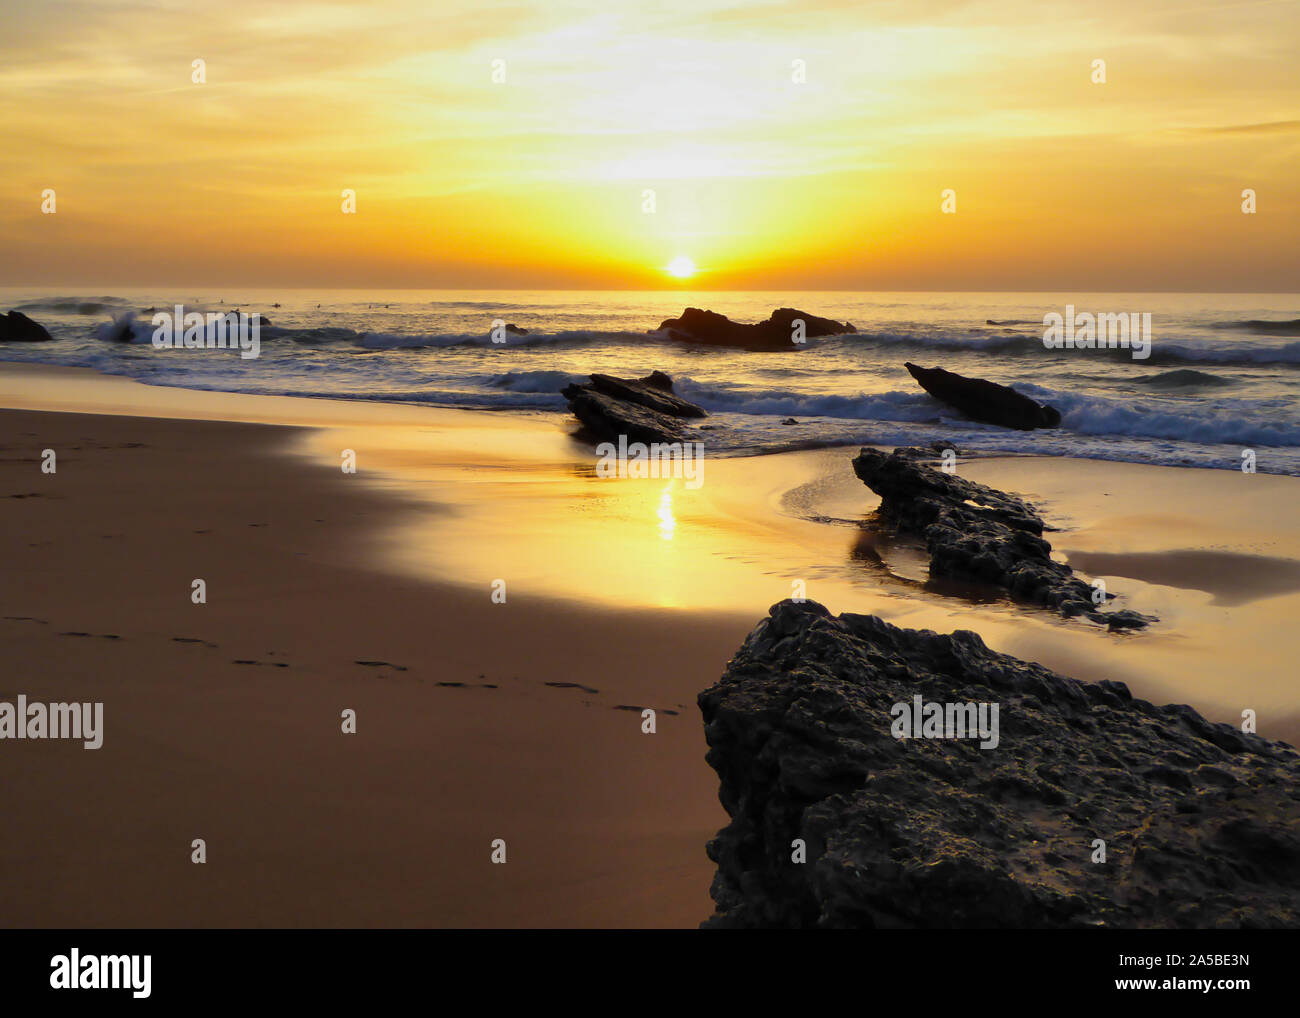 La célèbre plage appelé : Praia do Guincho au Portugal pendant le coucher du soleil Banque D'Images